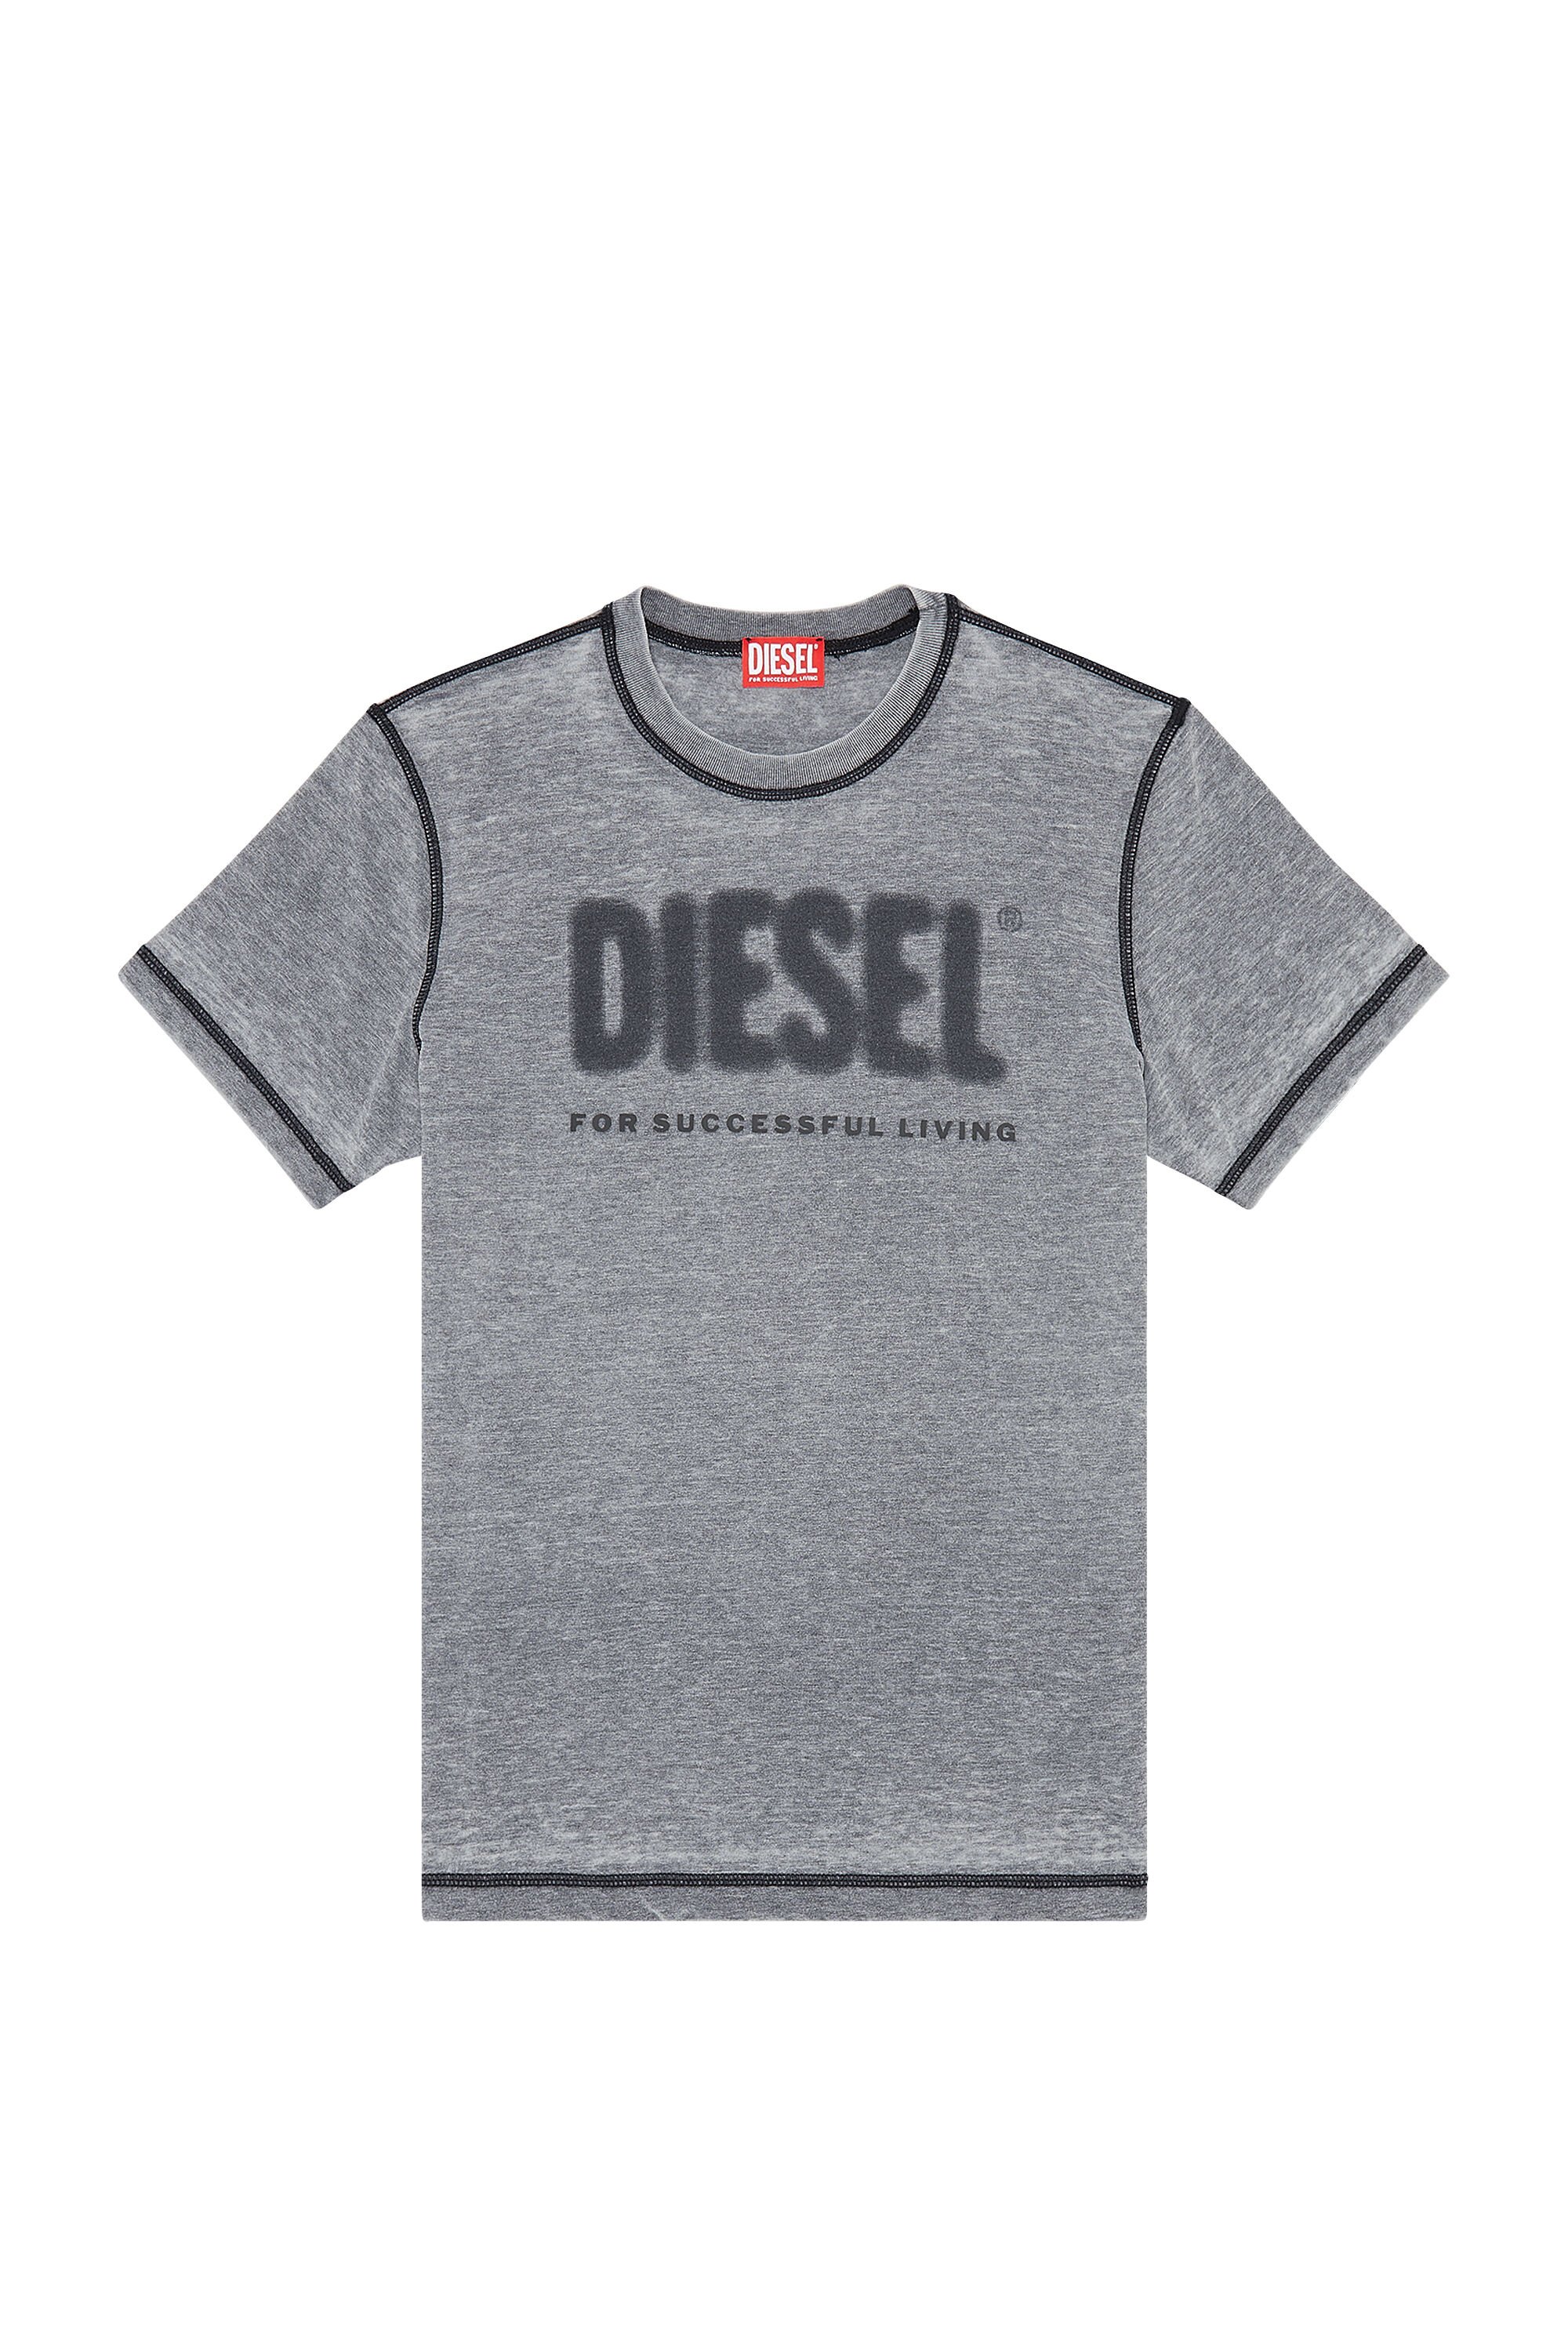 Diesel - T-DIEGOR-L1, Gris oscuro - Image 2